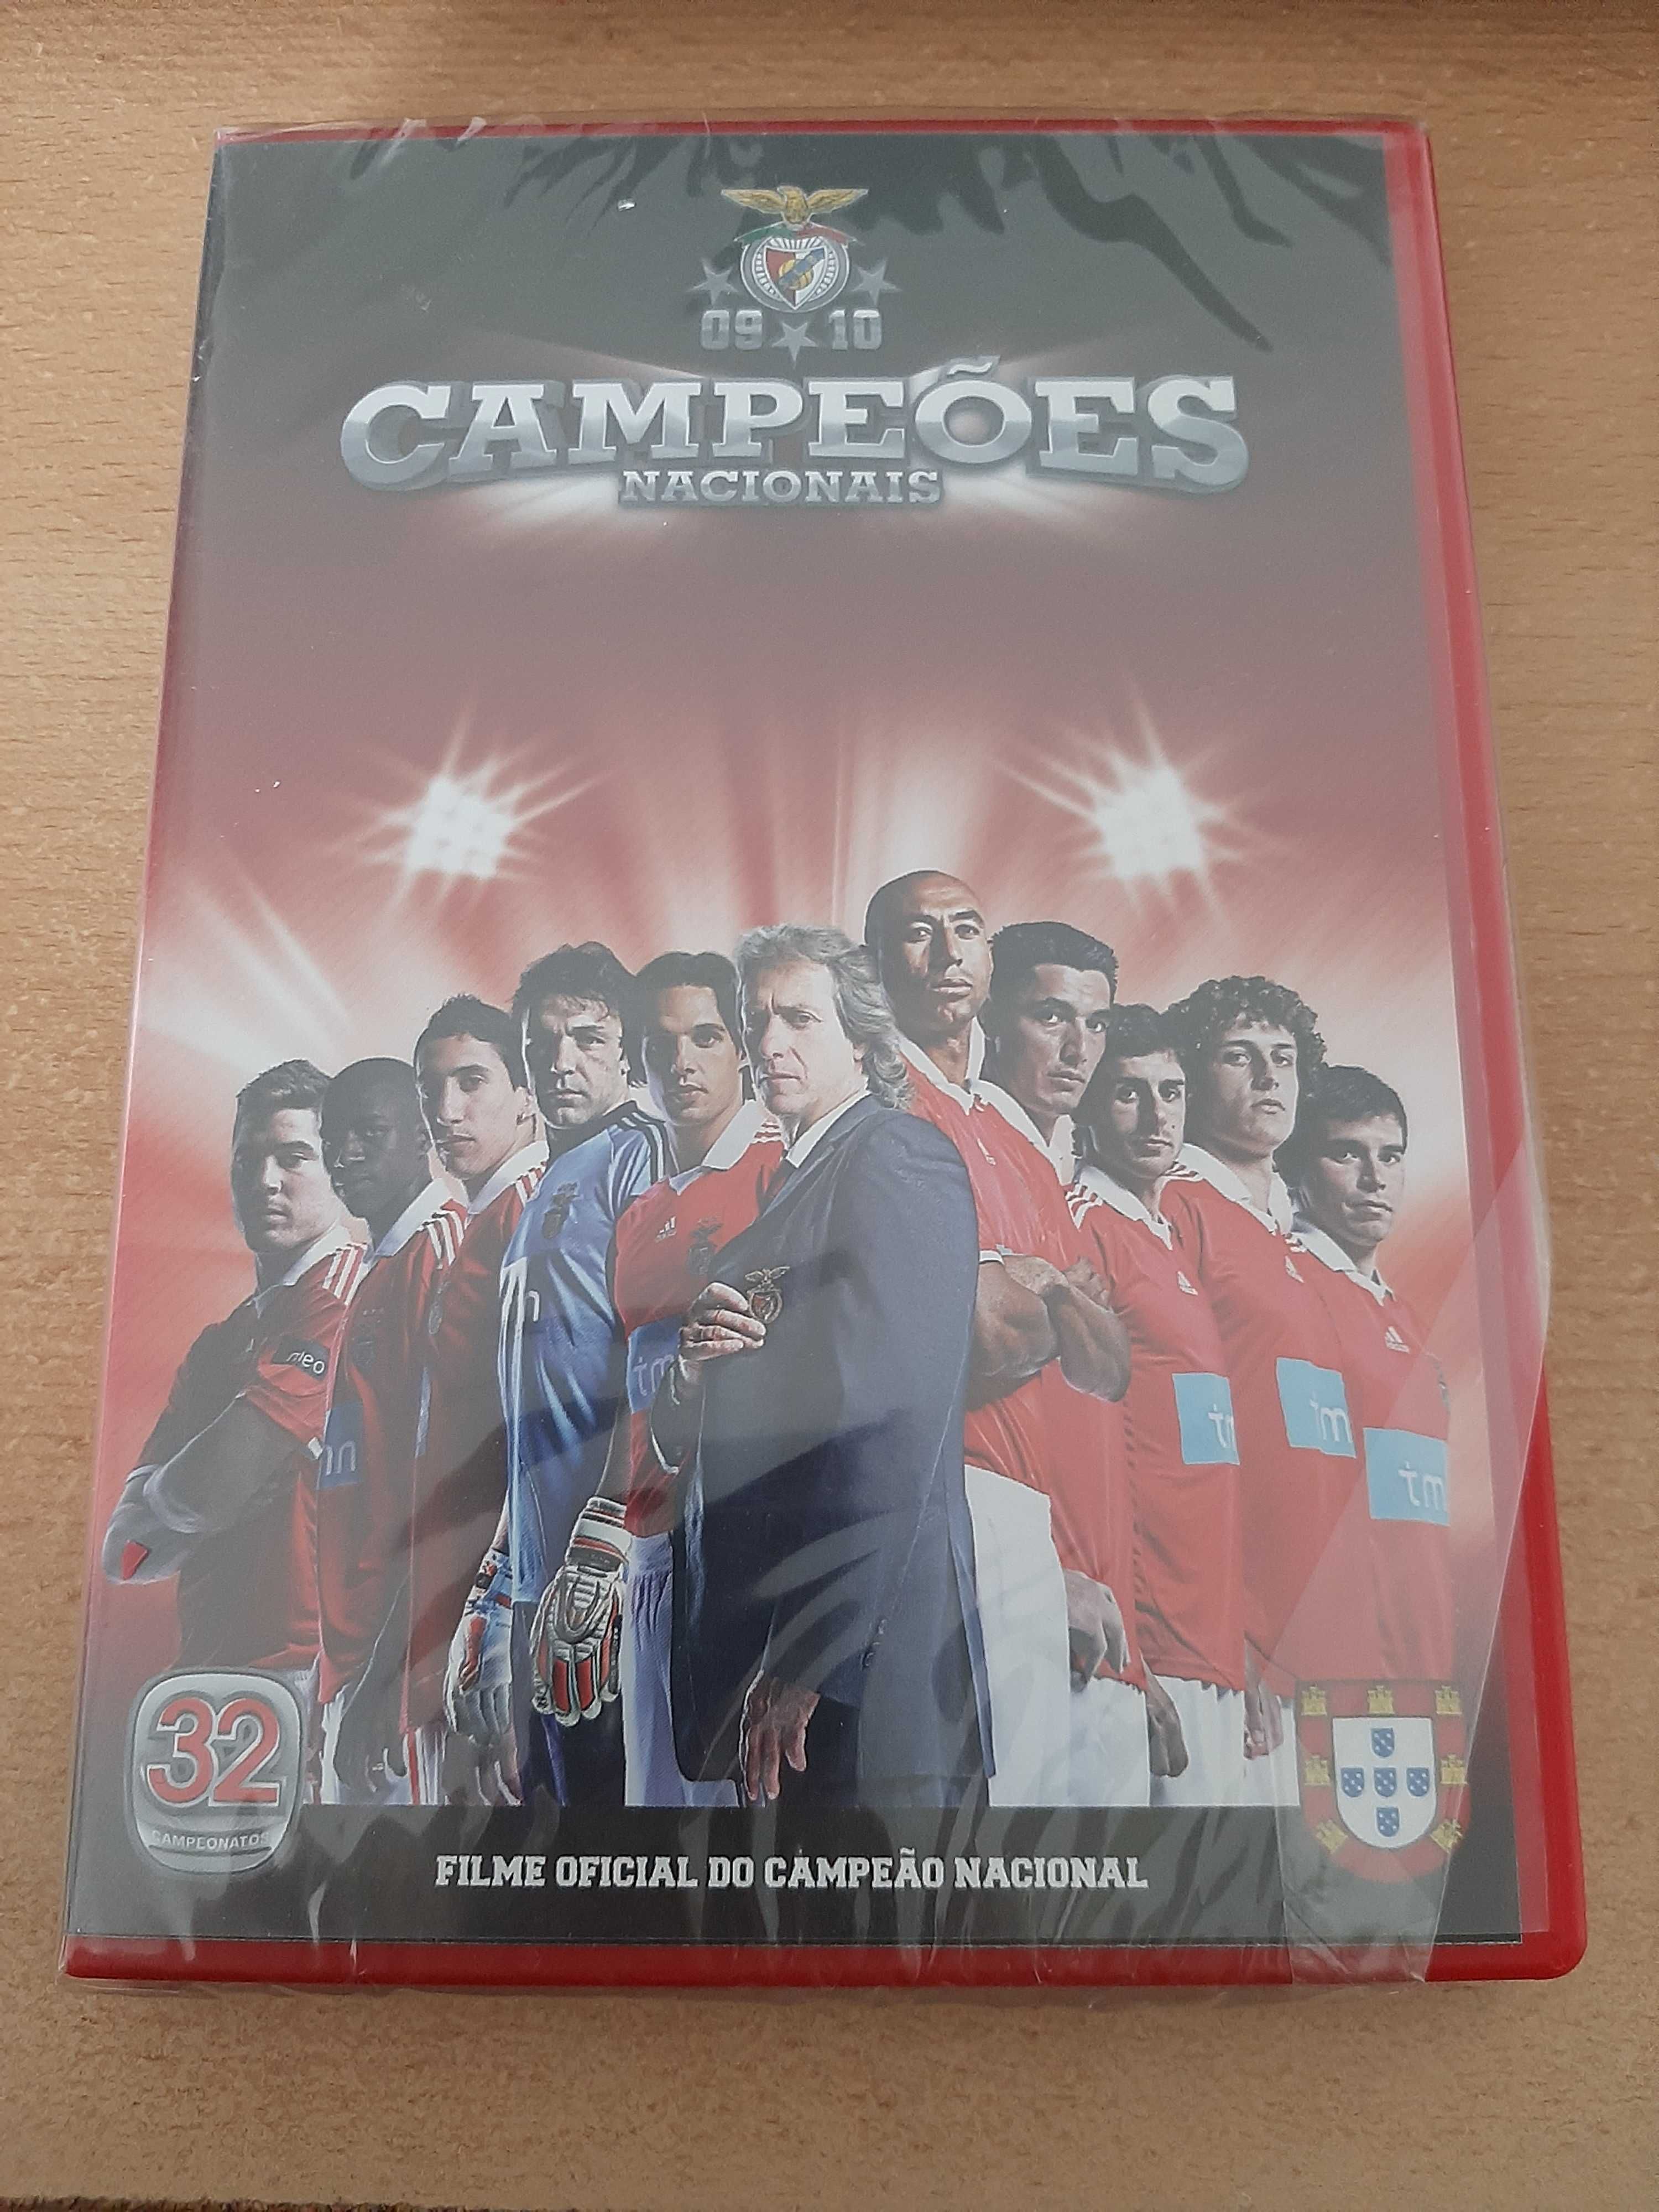 DVD Benfica Campeões Nacionais 2009/2010 novo